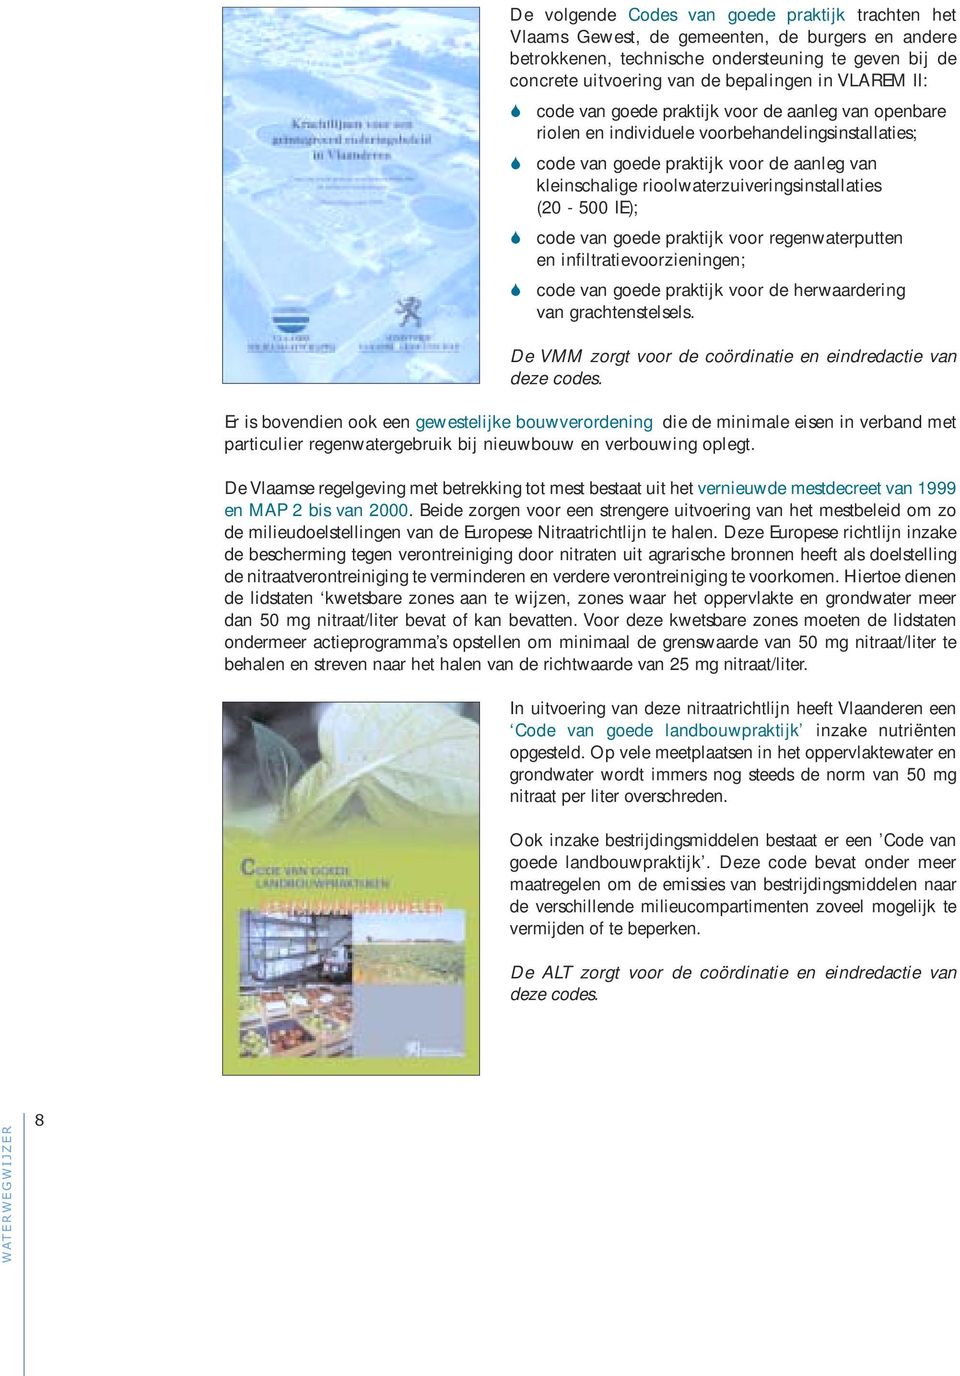 rioolwaterzuiveringsinstallaties (20-500 IE); code van goede praktijk voor regenwaterputten en infiltratievoorzieningen; code van goede praktijk voor de herwaardering van grachtenstelsels.